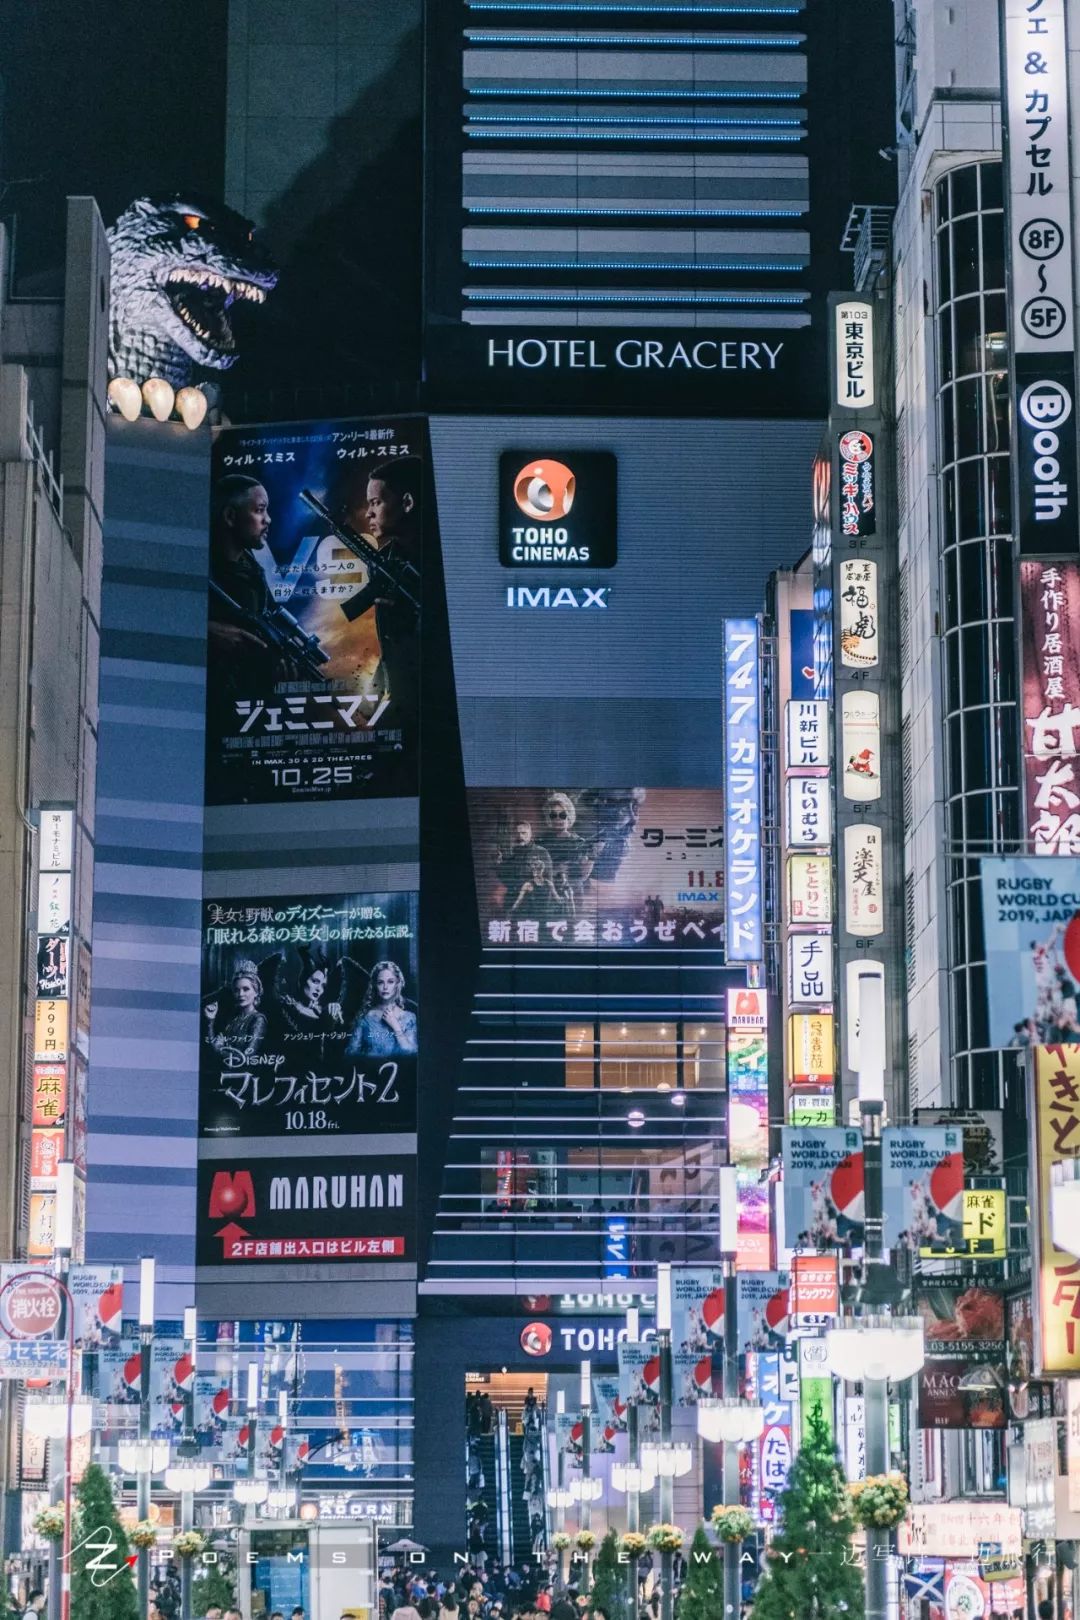 东京 新宿夜景拍摄指南 一边写诗一边旅行 微信公众号文章阅读 Wemp